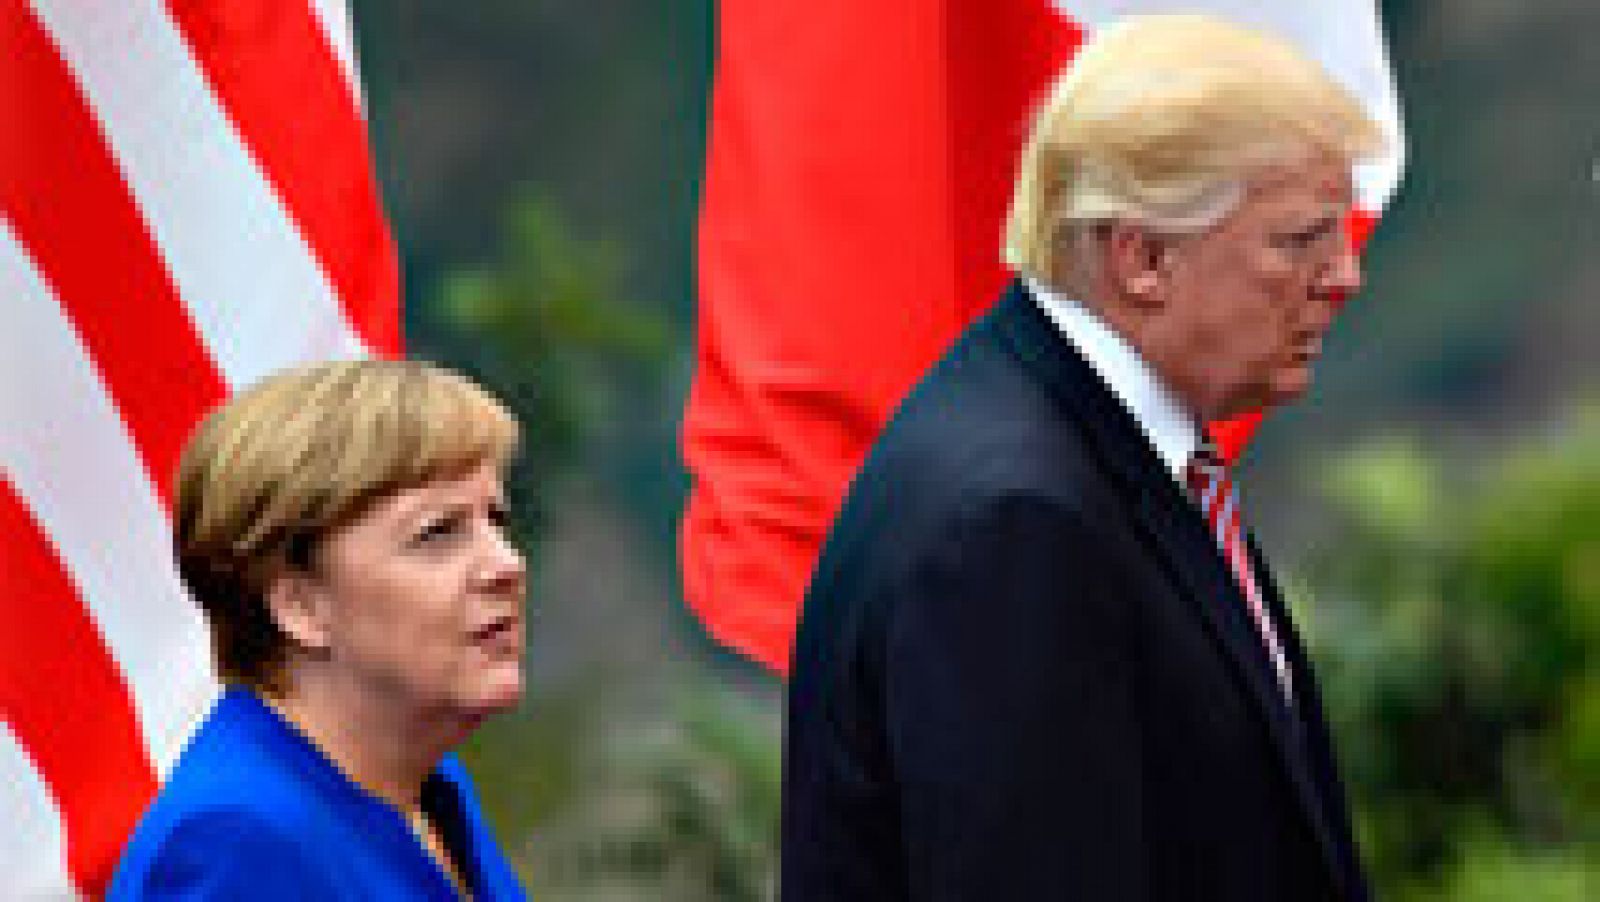 Cruce de reproches entre Trump y Merkel